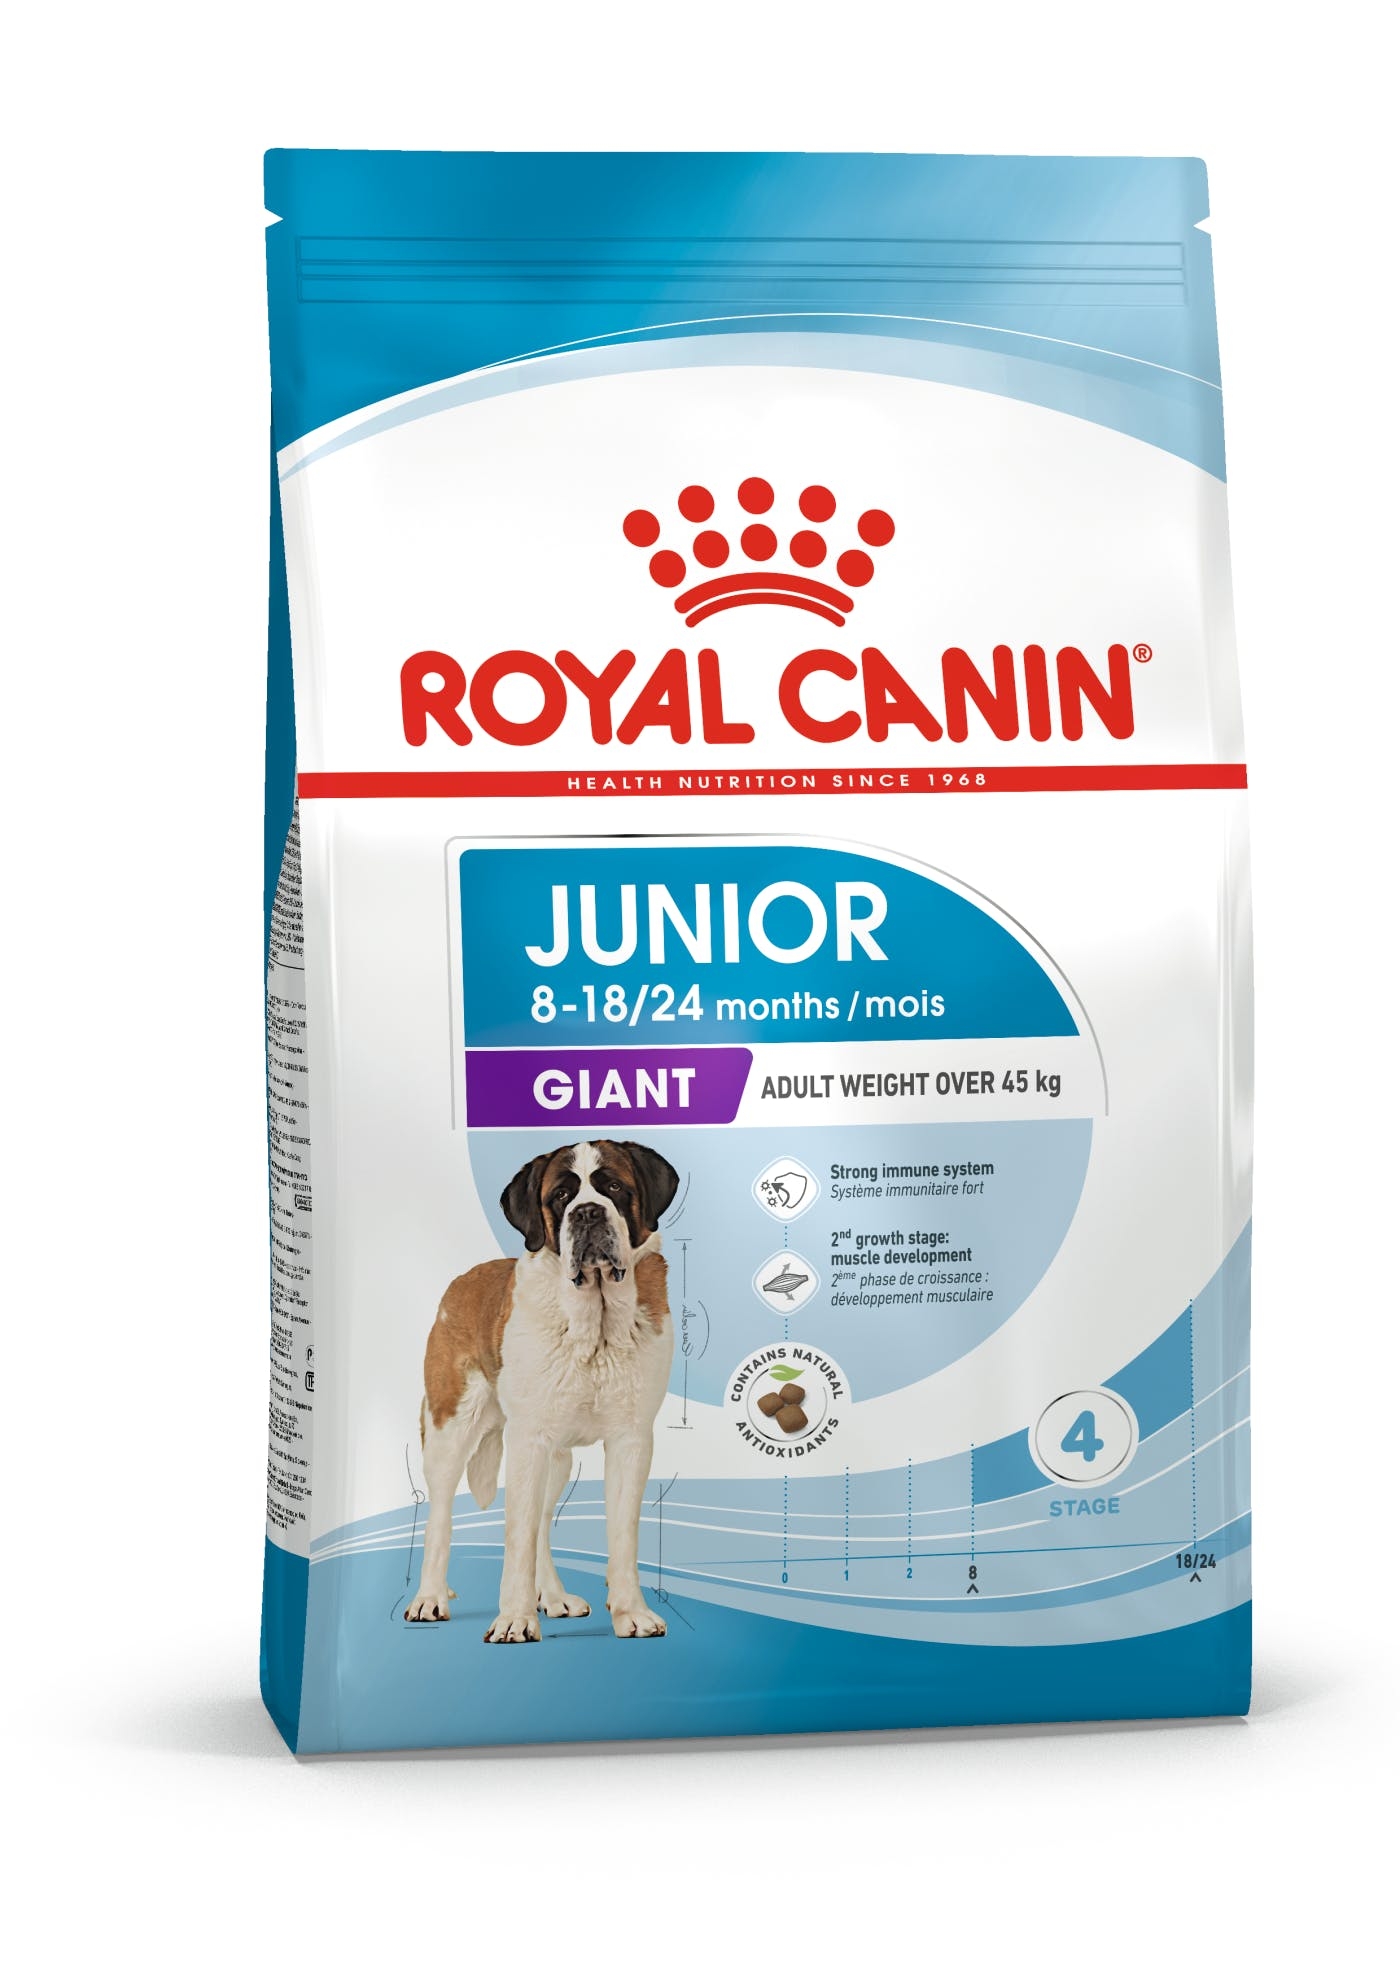 Billede af Royal Canin Giant Junior. Hunde fra 8 til 18/24 måneder. Voksenvægt over 45 kg. (15kg)